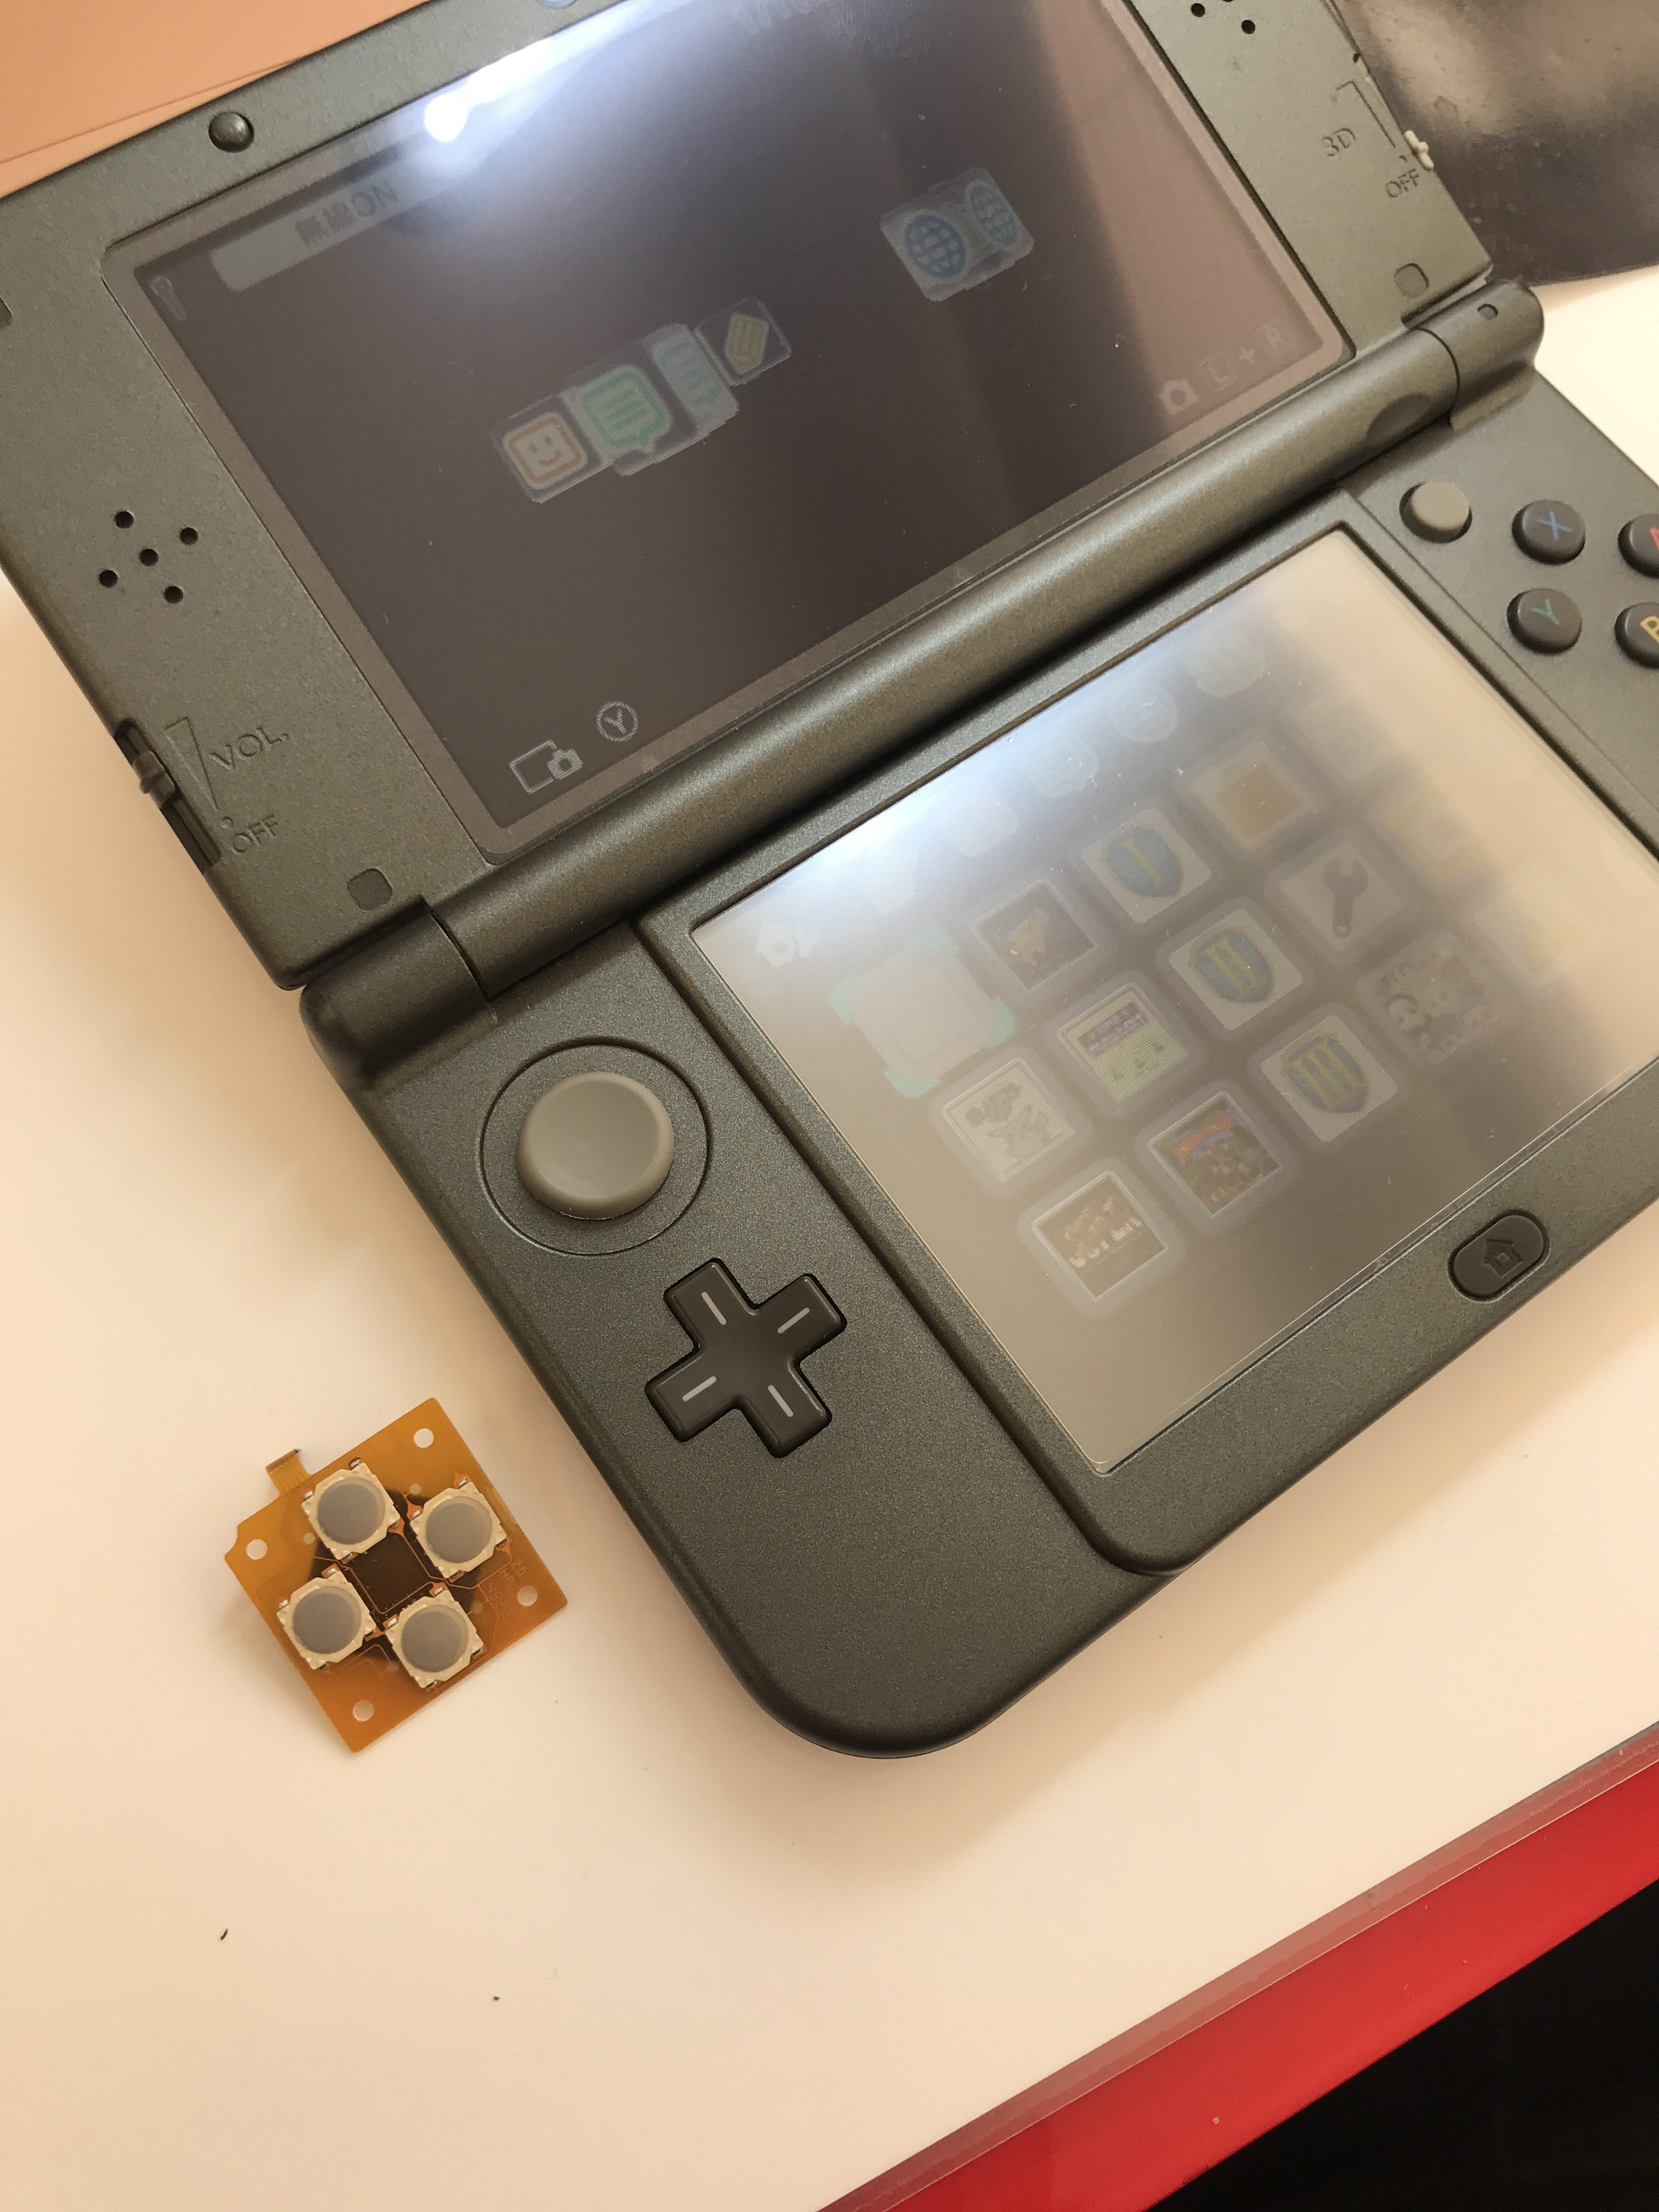 任天堂 New3dsll 十字キーの上が入力されたりされなかったり パーツの交換修理 Nintendo3ds Switch Psp 修理のゲームホスピタル Nintendo3ds ニンテンドーds Psp Switch 修理